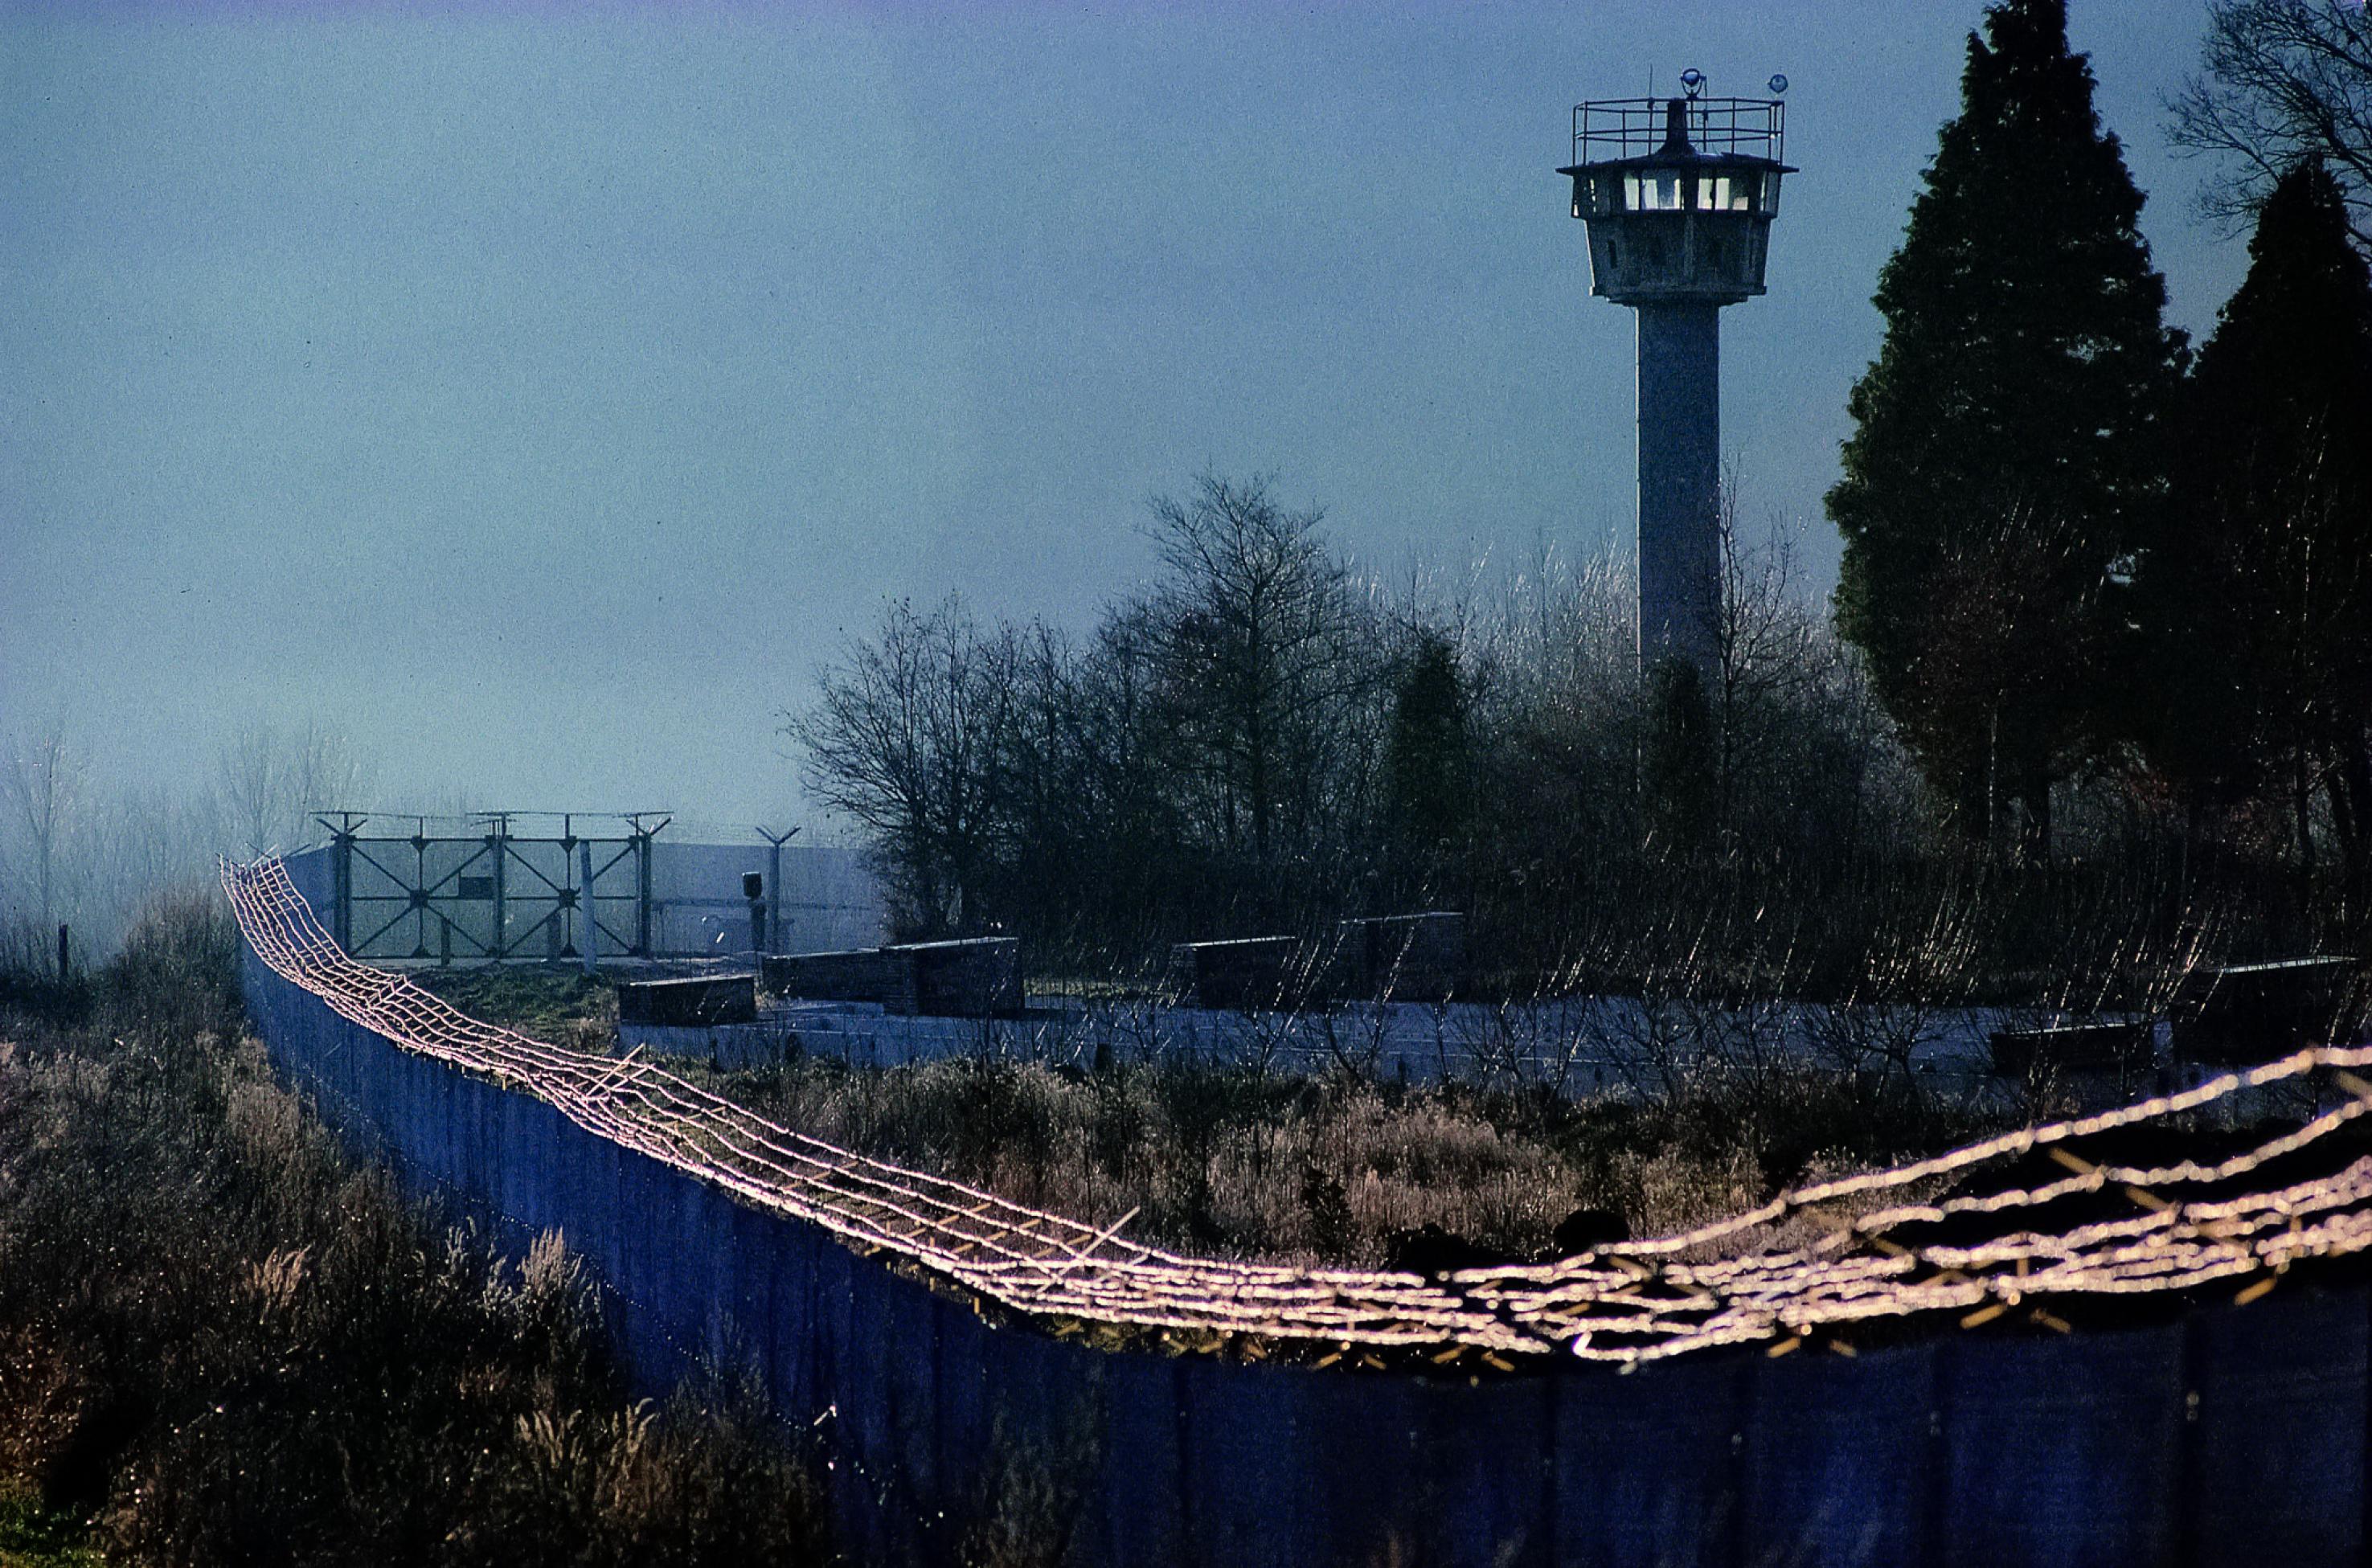 Stacheldrahtbewehrte Zäune ziehen sich vor einem DDR-Wachturm entlang. Die Anlage wirkt brutal.